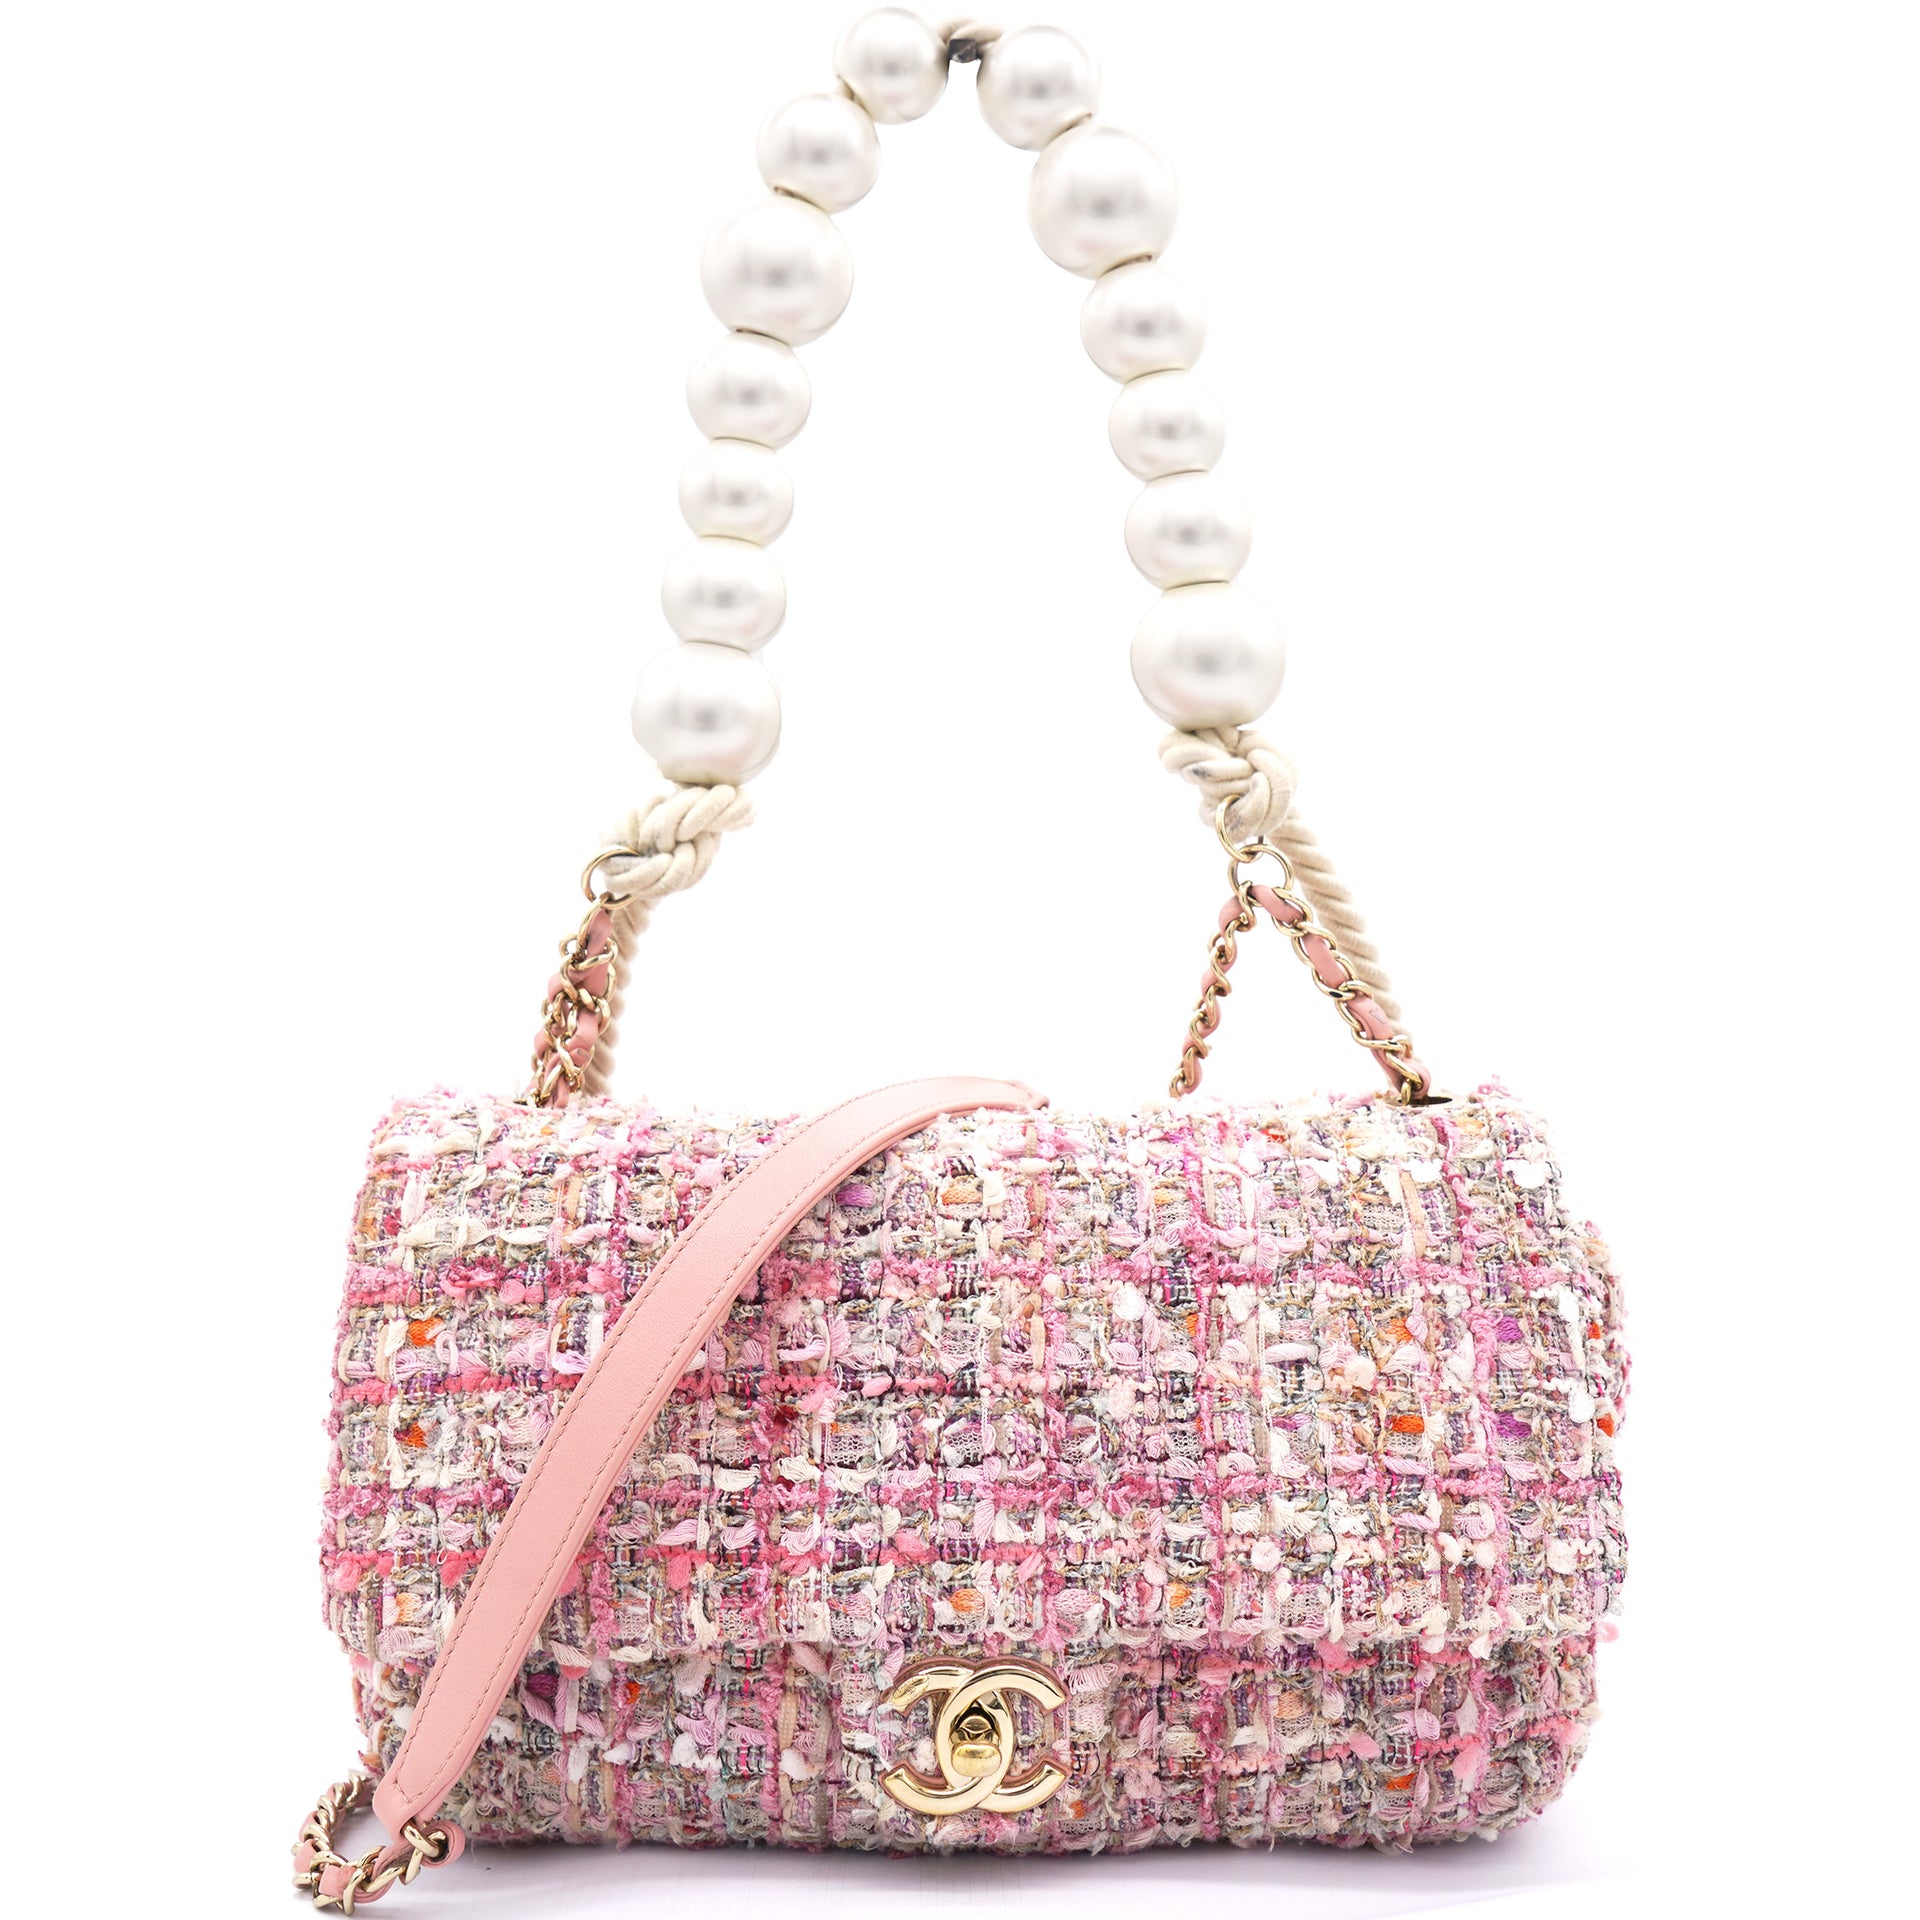 Mini flap bag Tweed resin  goldtone metal pink dark pink  white   Fashion  CHANEL